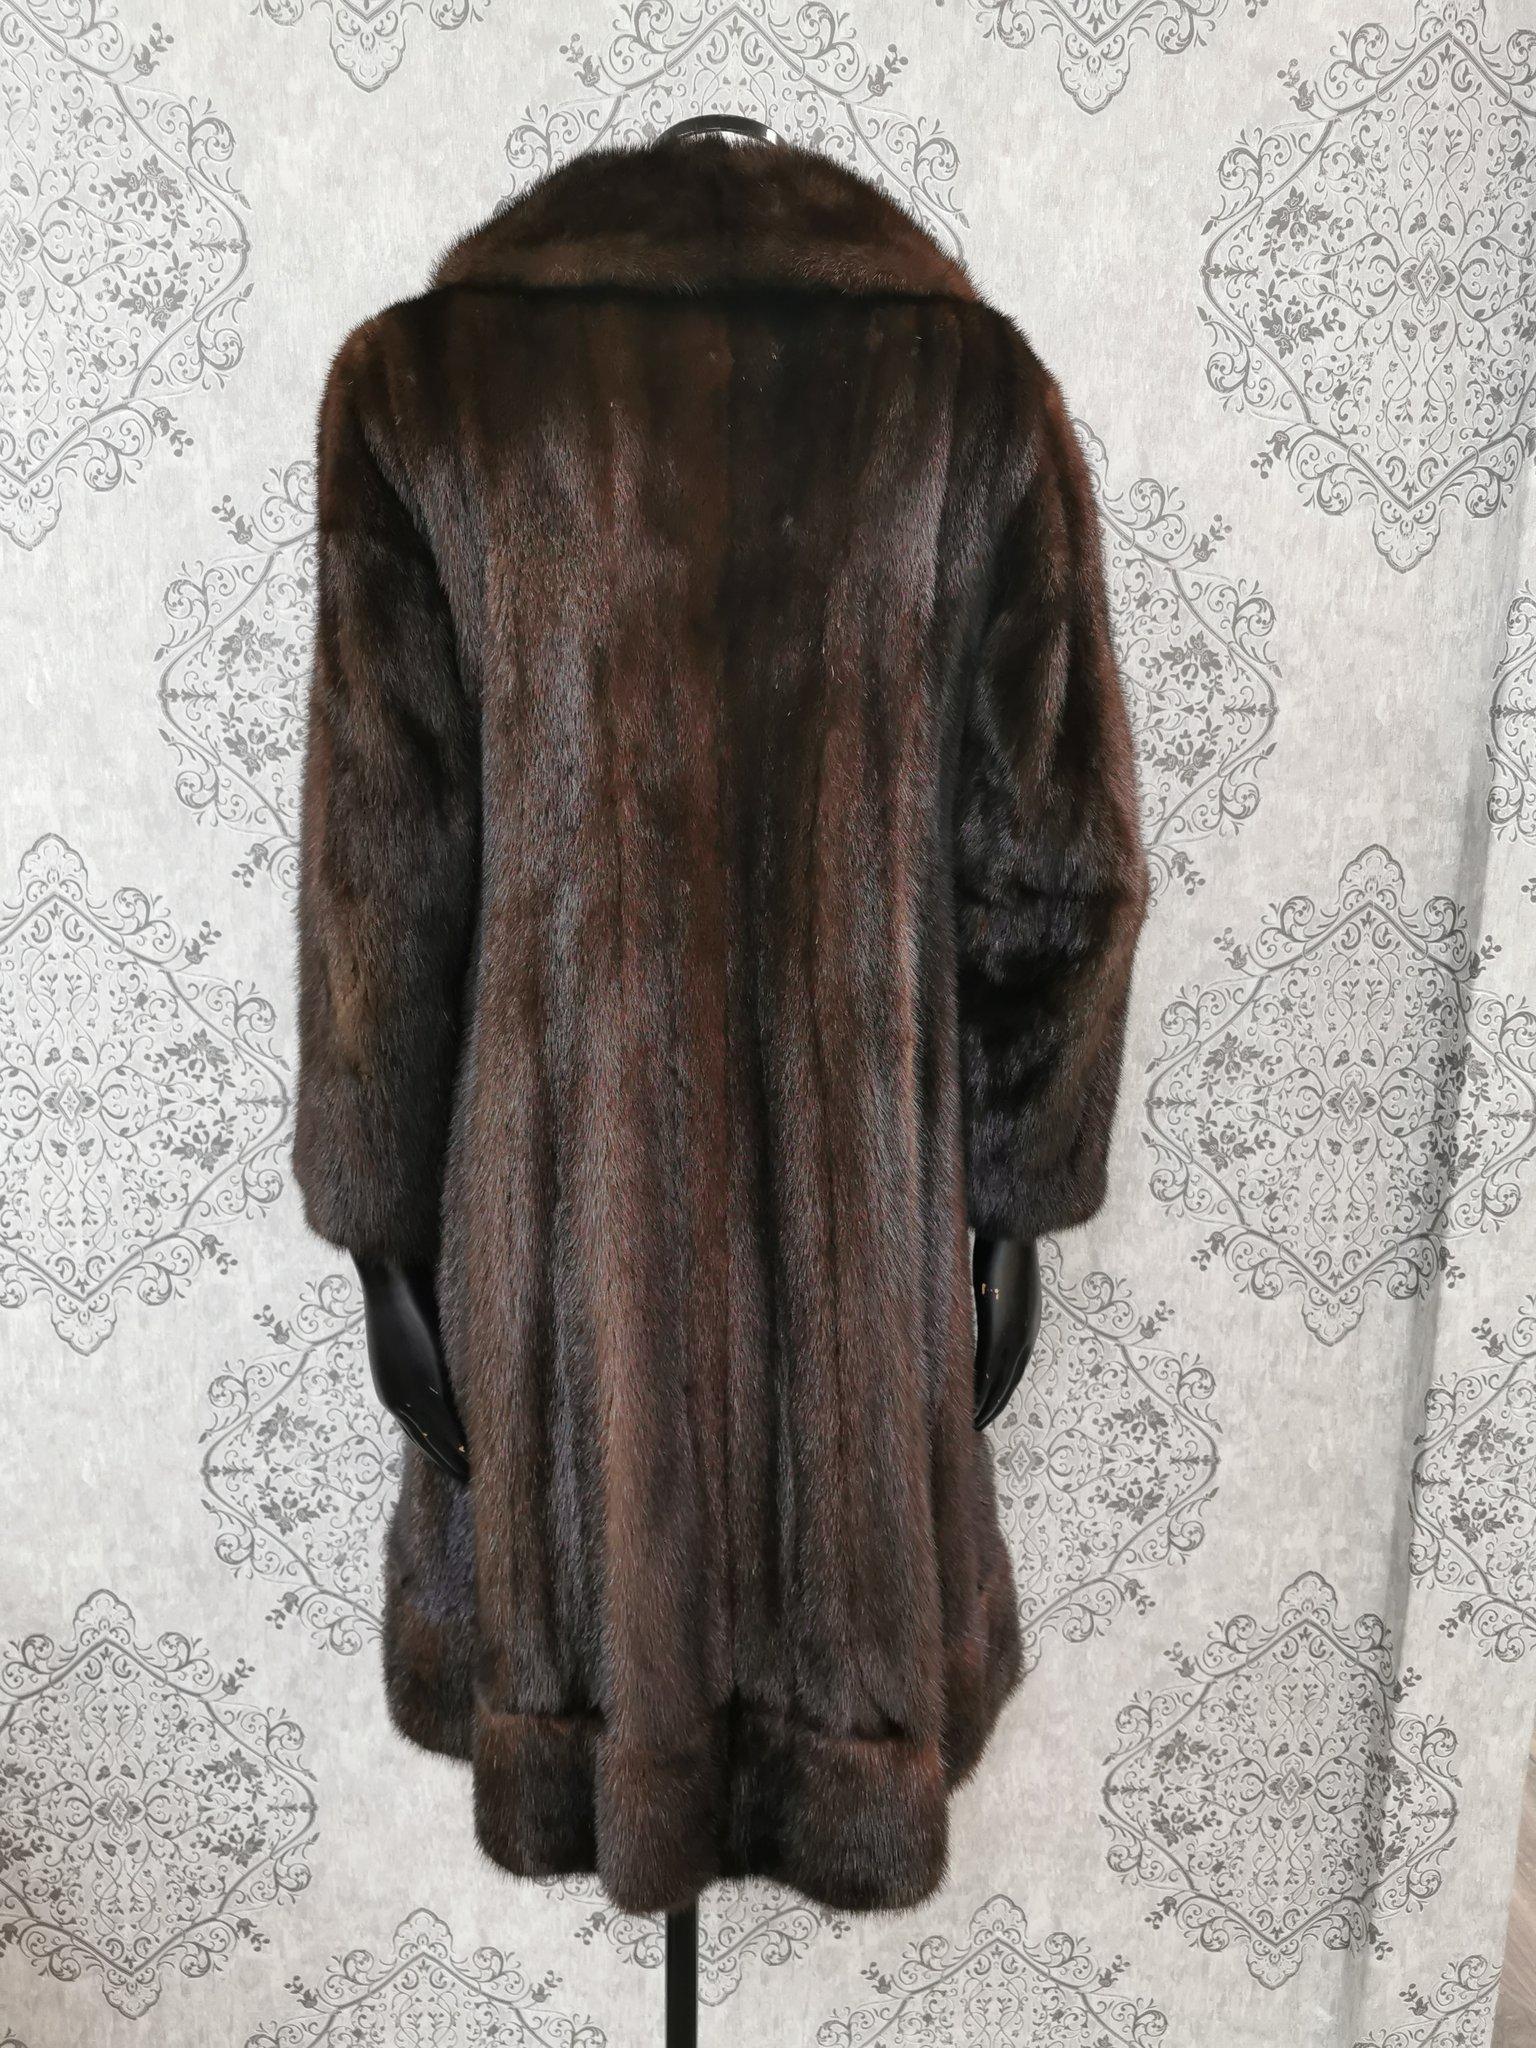 Christian dior / Holt renfrew mink fur coat size 6 For Sale 2